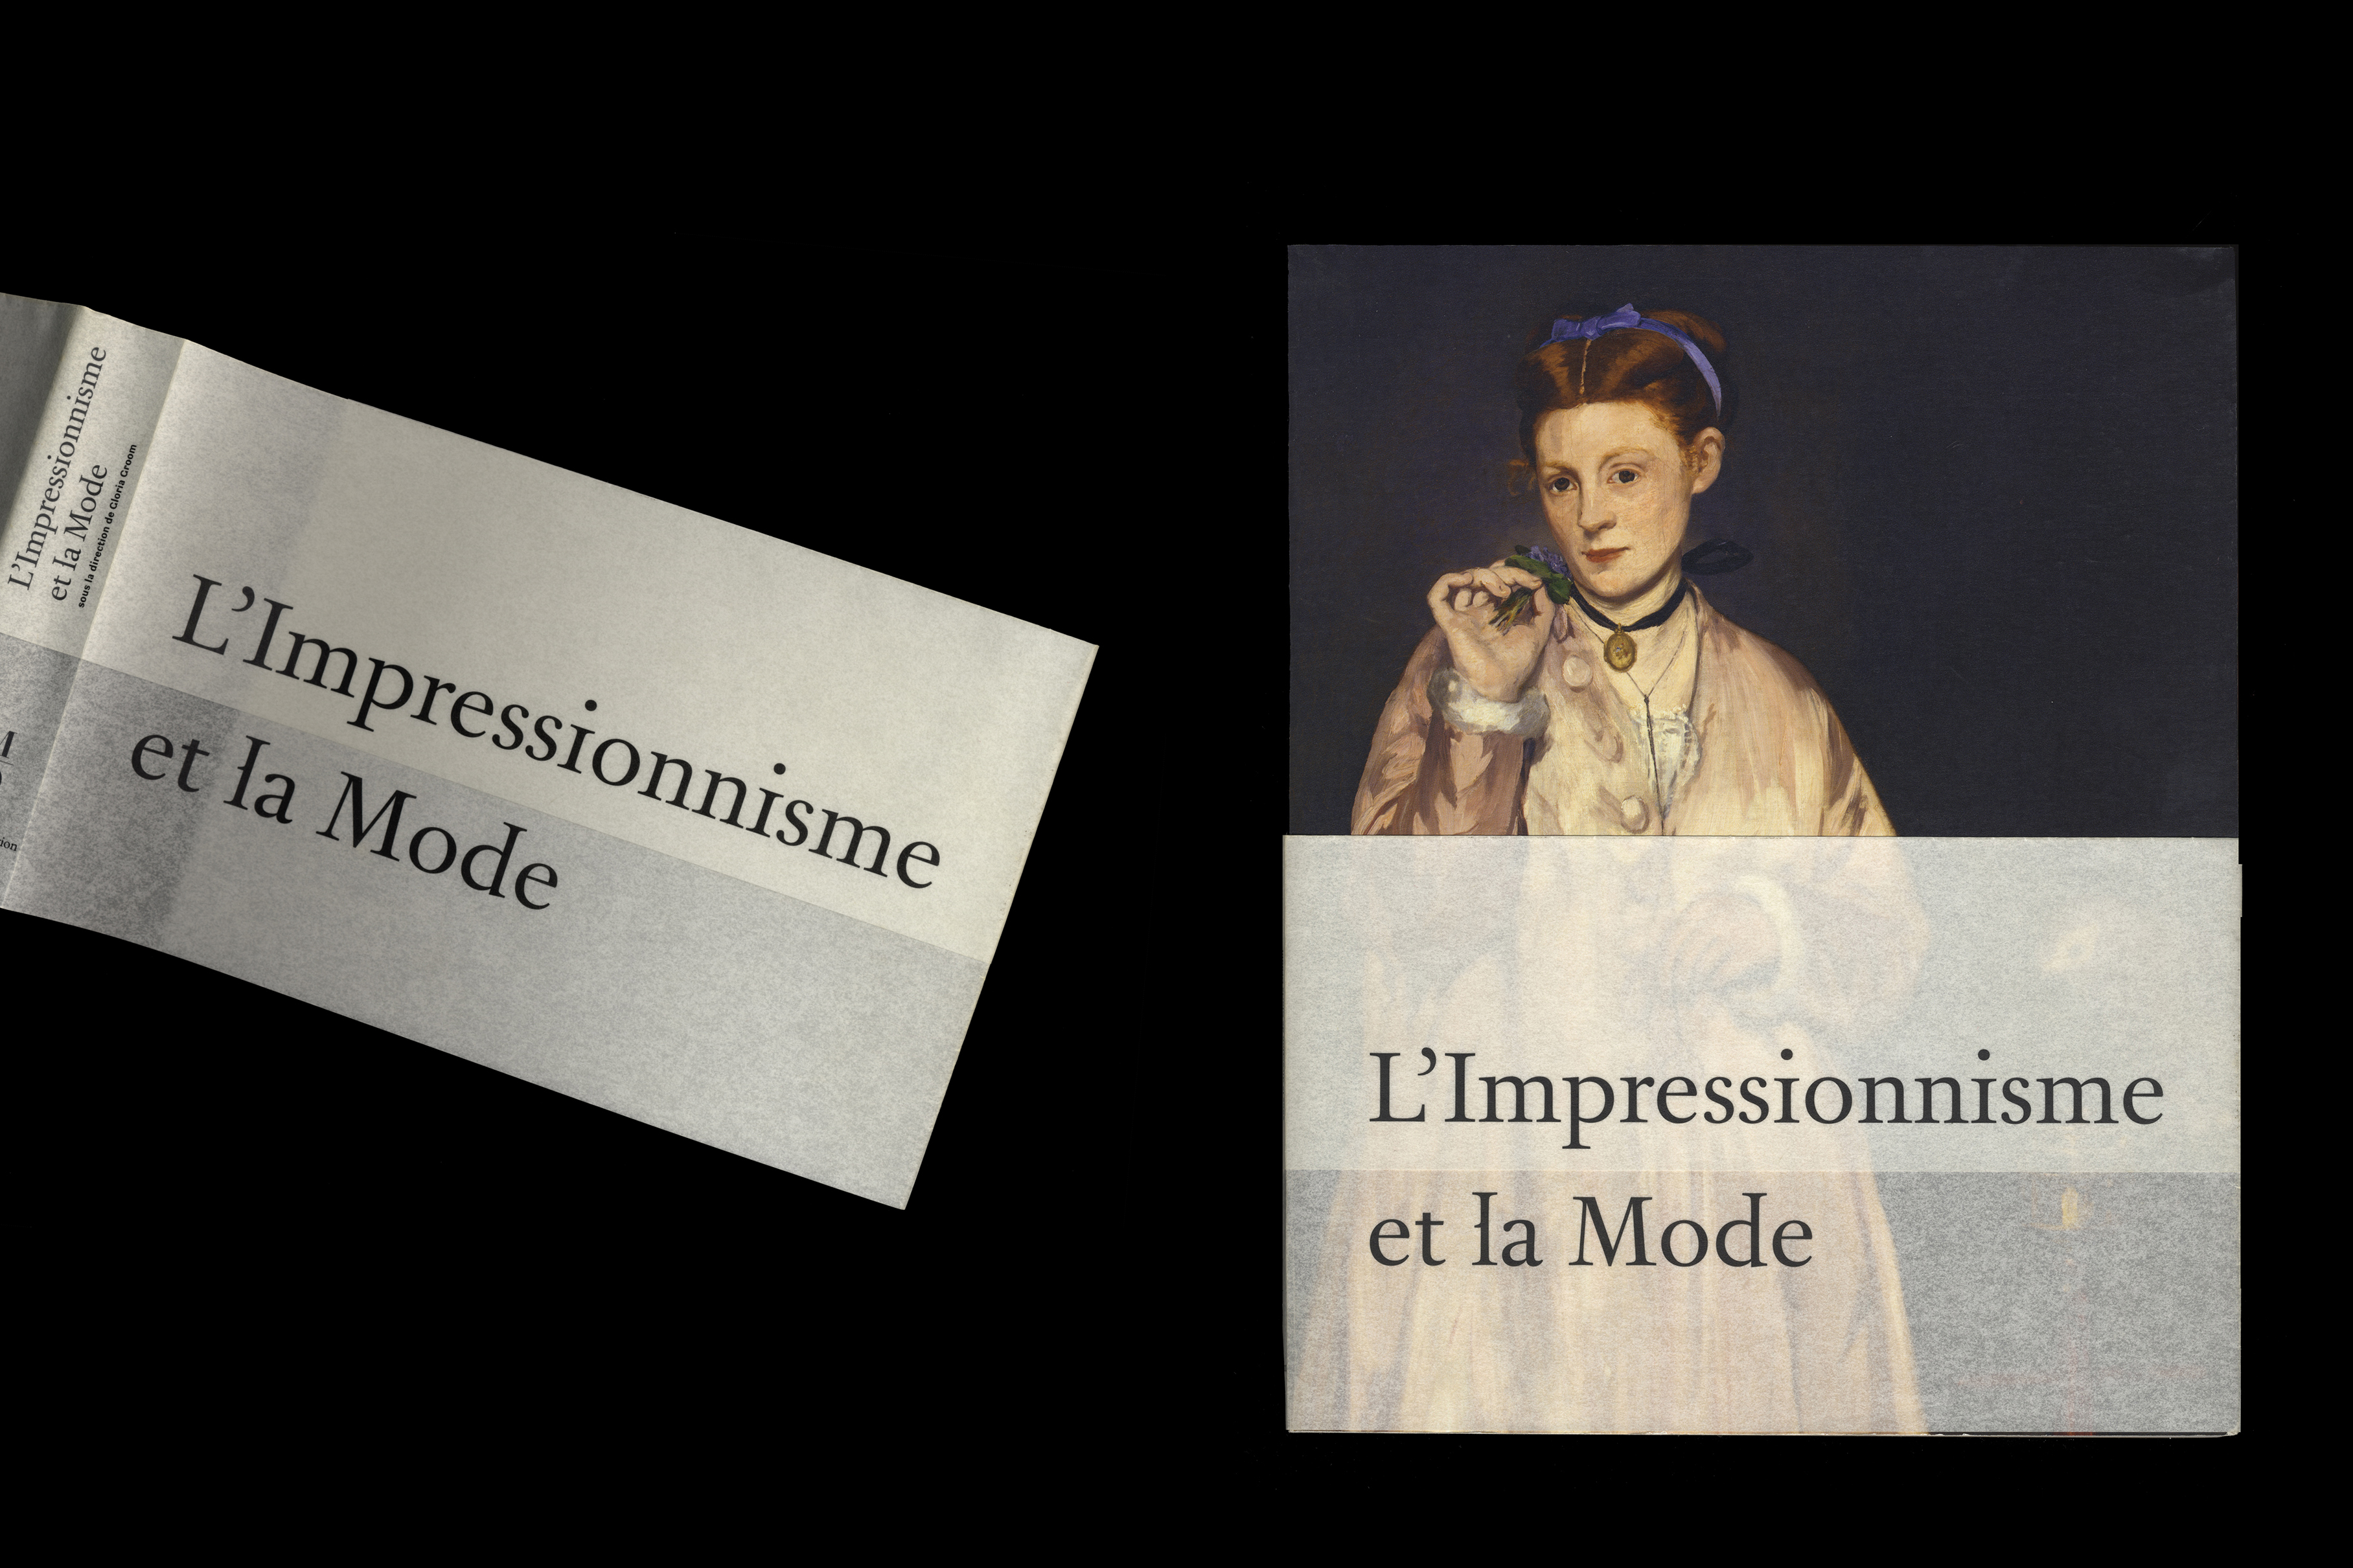 L’impressionnisme et la mode